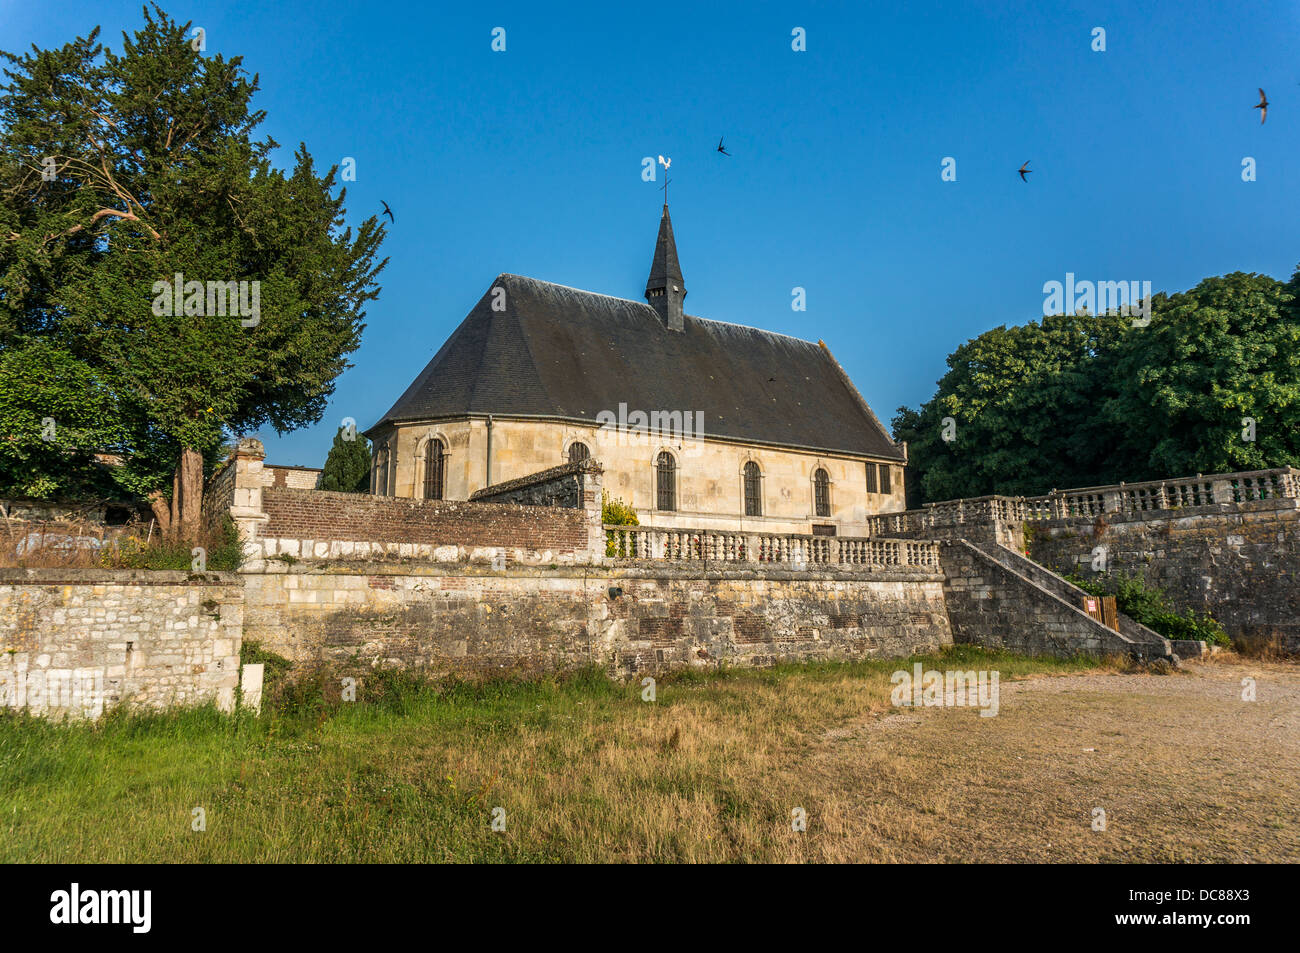 Vecchia chiesa accanto al fiume, La Mailleraye-sur-Seine, dipartimento Seine-Maritime, Haute-Normandie regione nel nord della Francia. Foto Stock